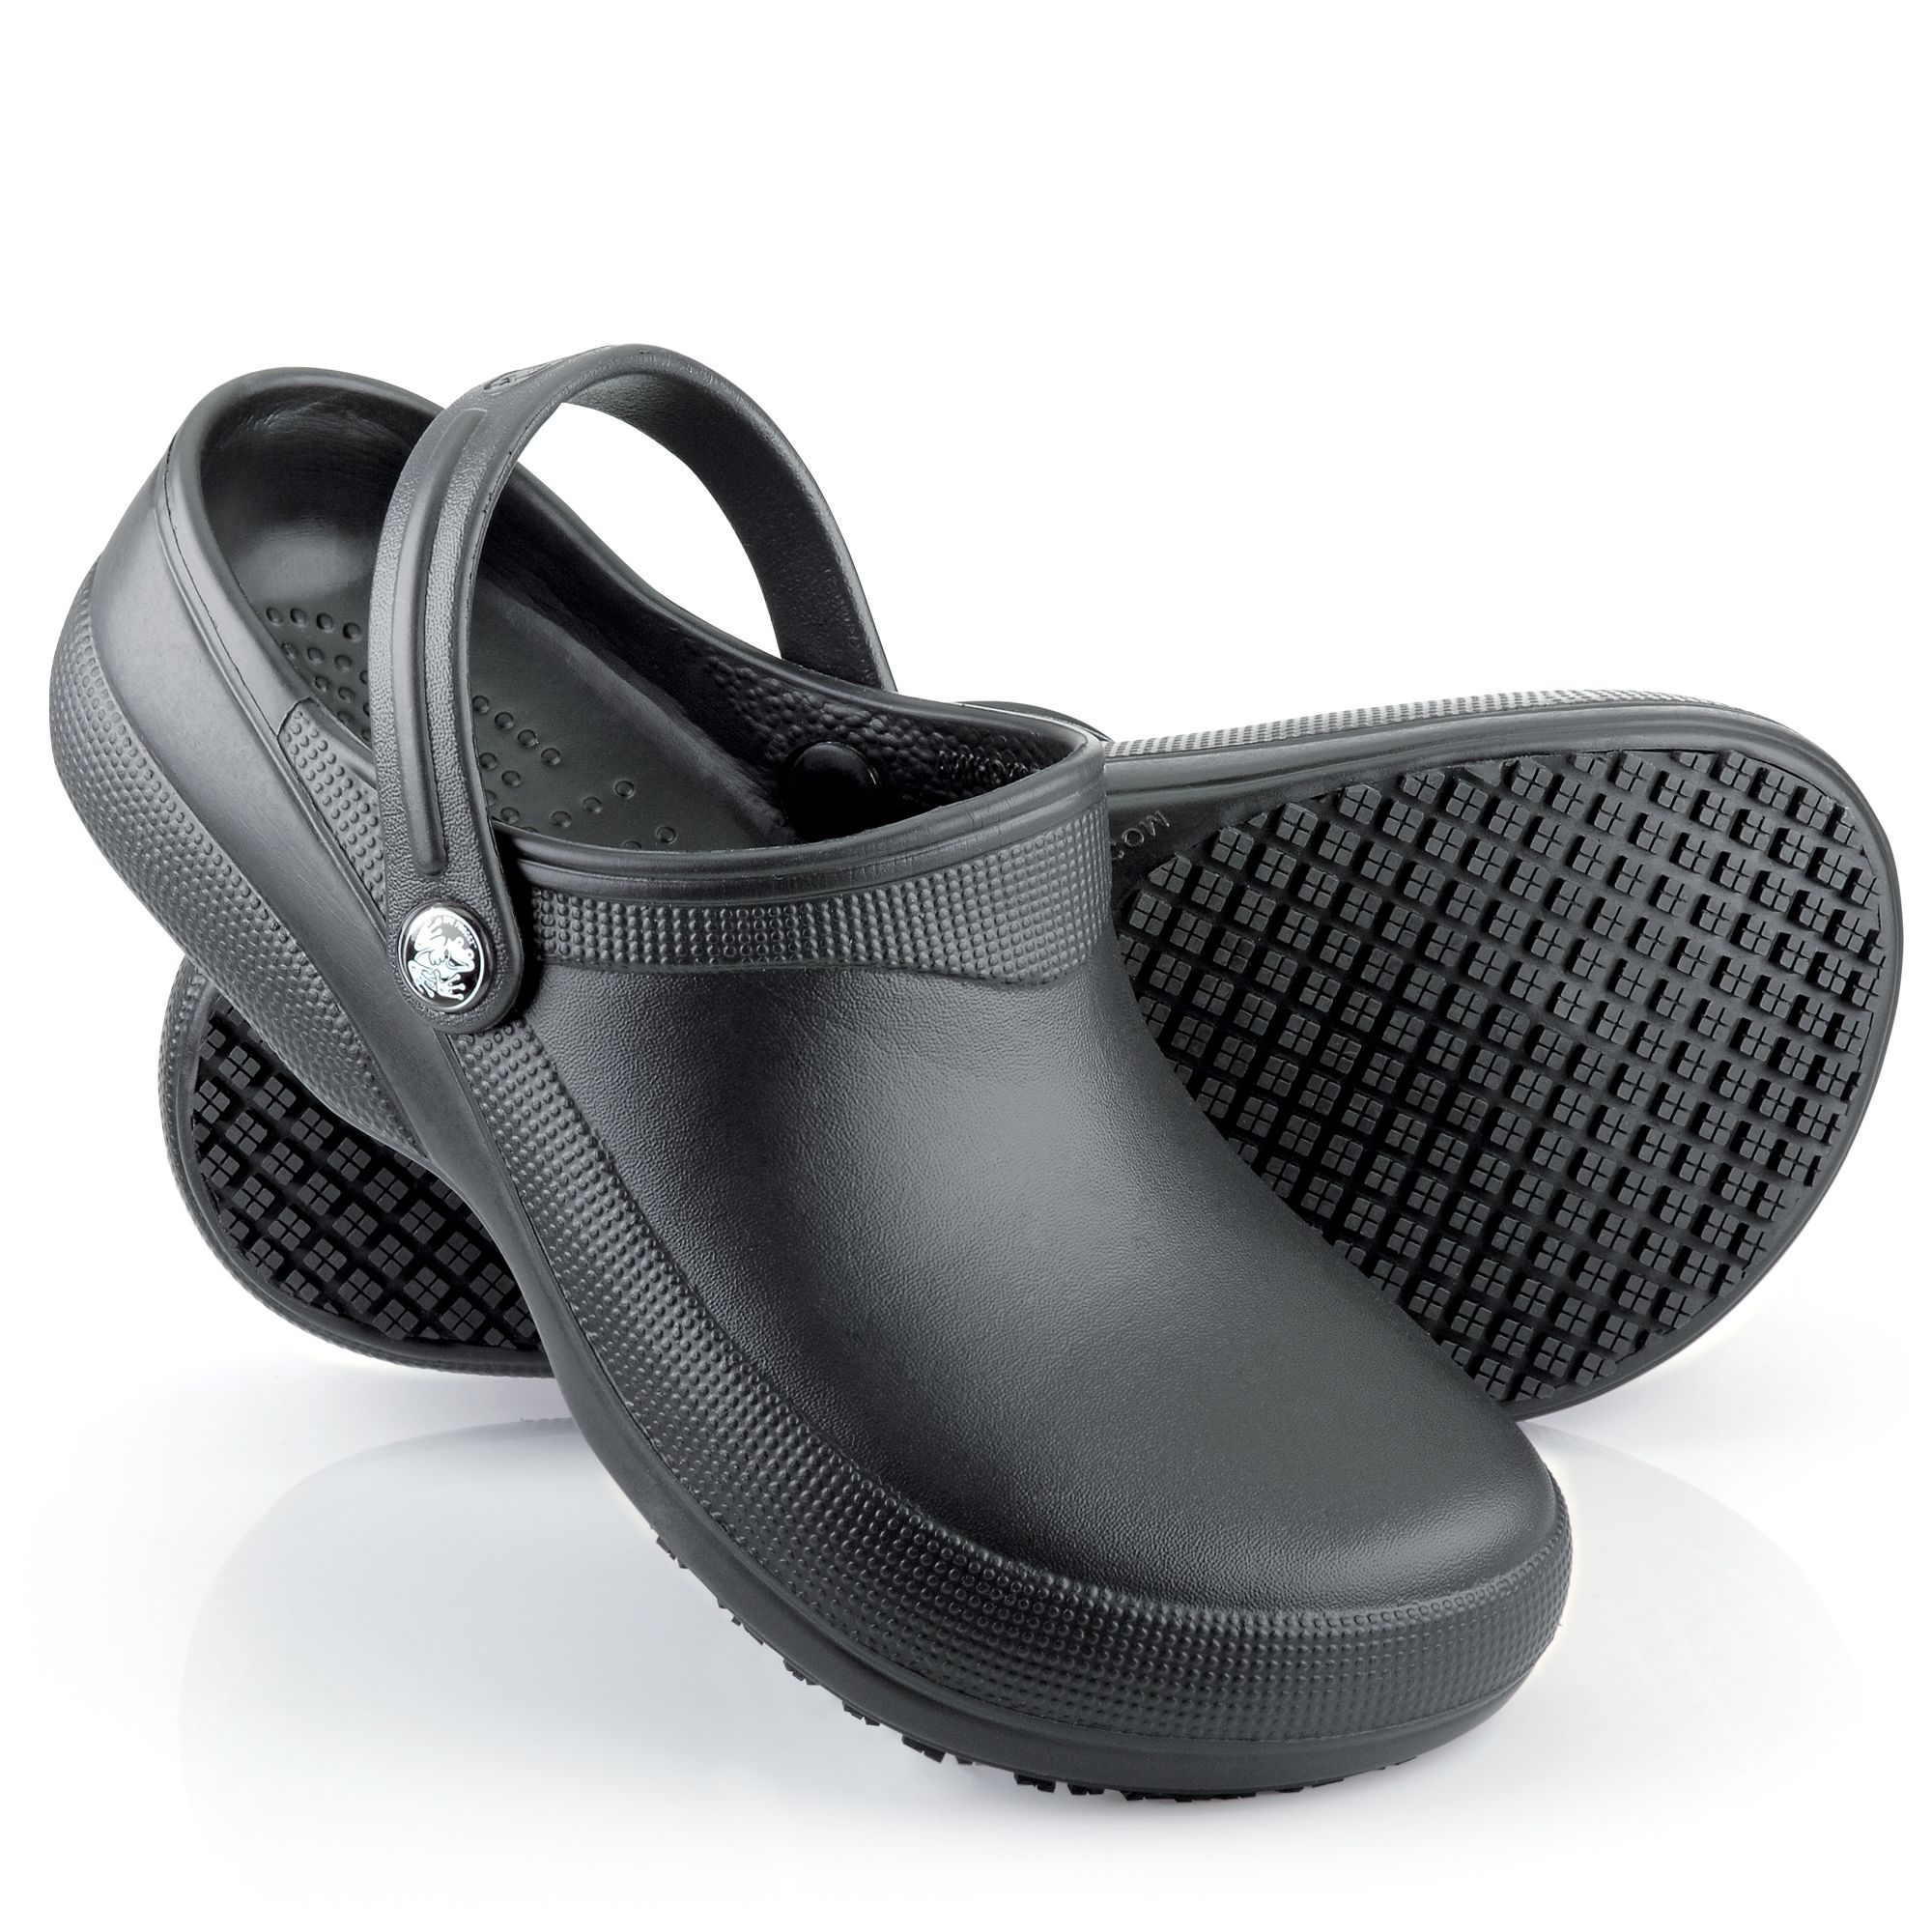 Black, slip-resistant, waterproof clogs 